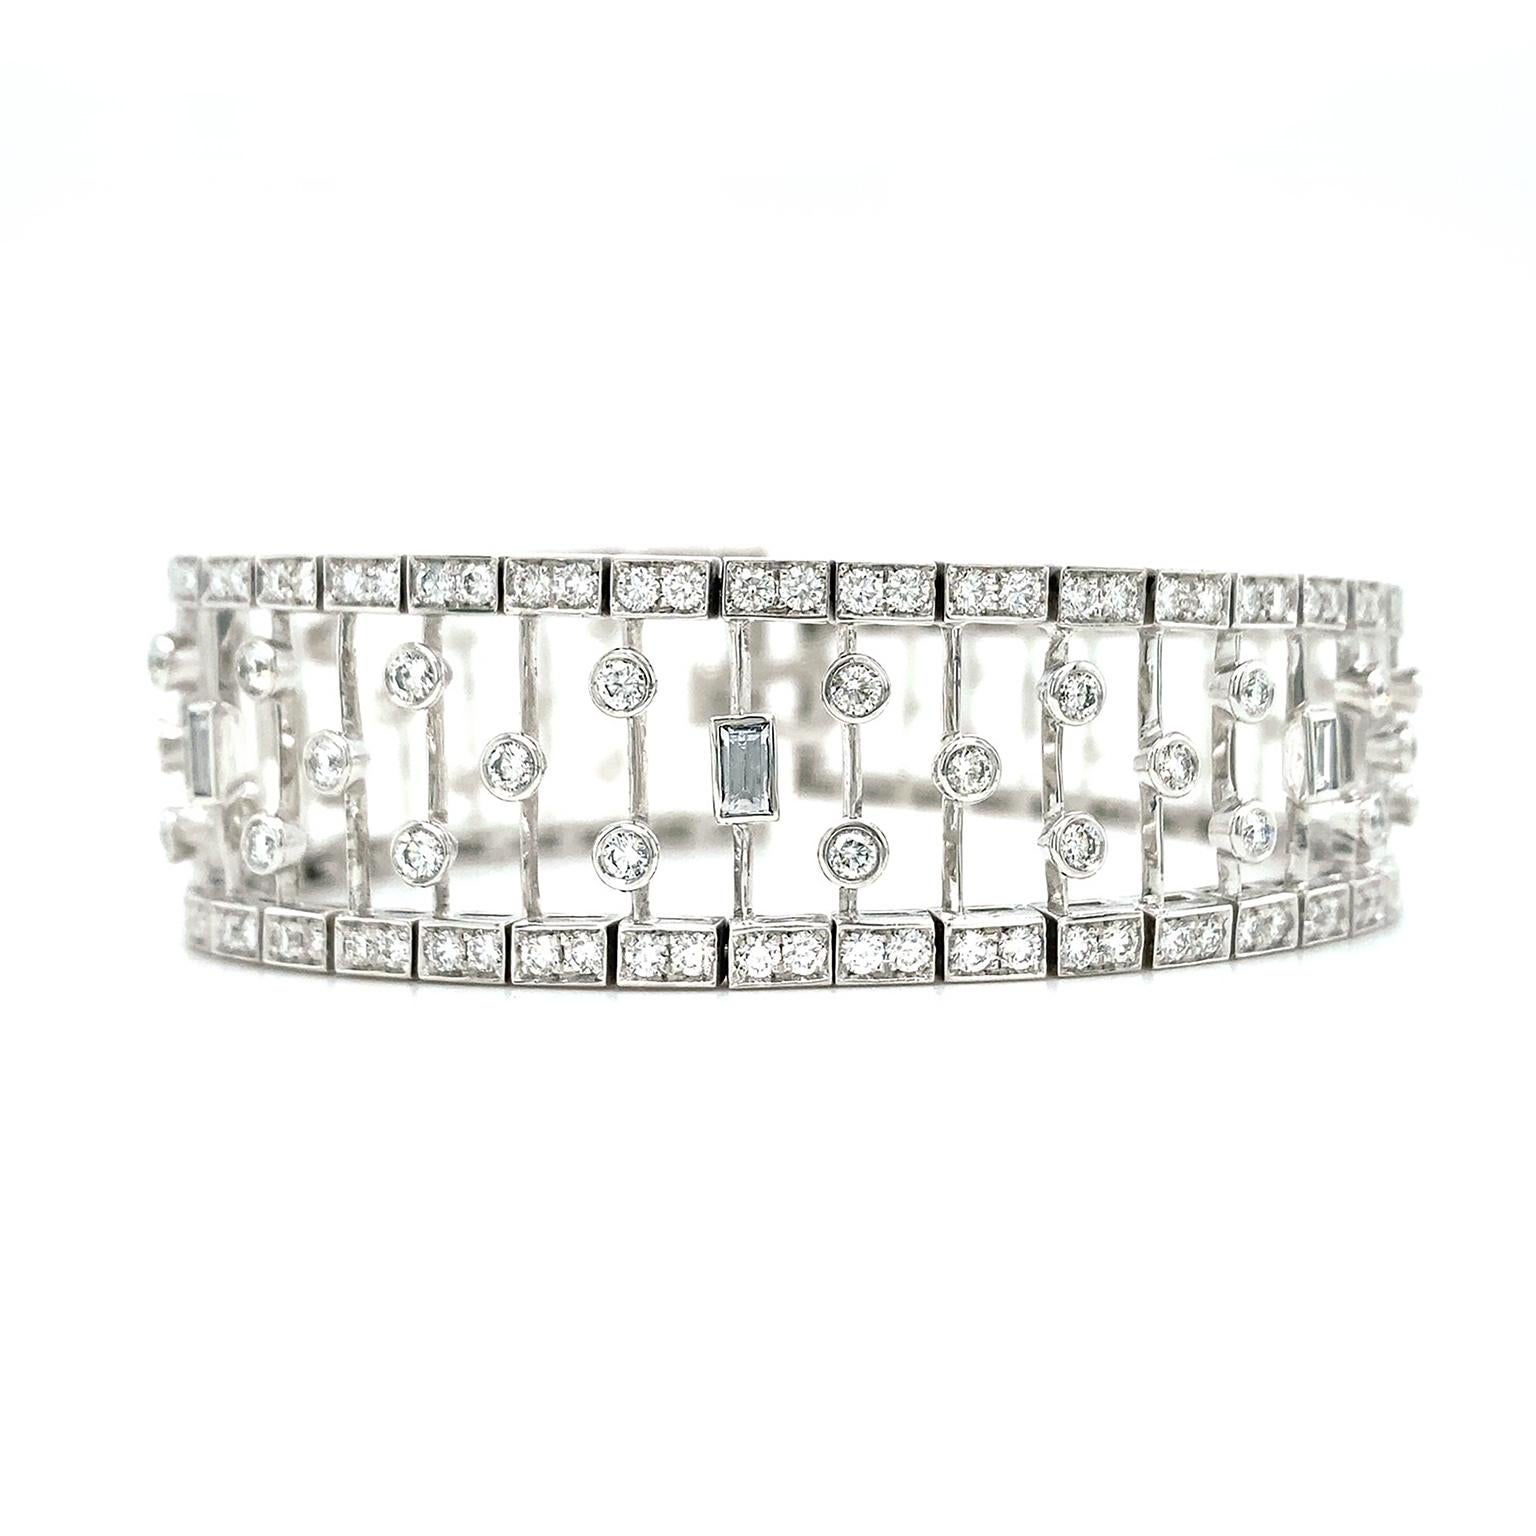 Symmetrie und flackernde Diamanten sorgen für ein raffiniertes Armband. Das gepflasterte Diamantband ist an der Schließe am schmalsten und wird allmählich breiter. Im Inneren des Bandes befindet sich eine durchbrochene Anordnung von Platinstielen,